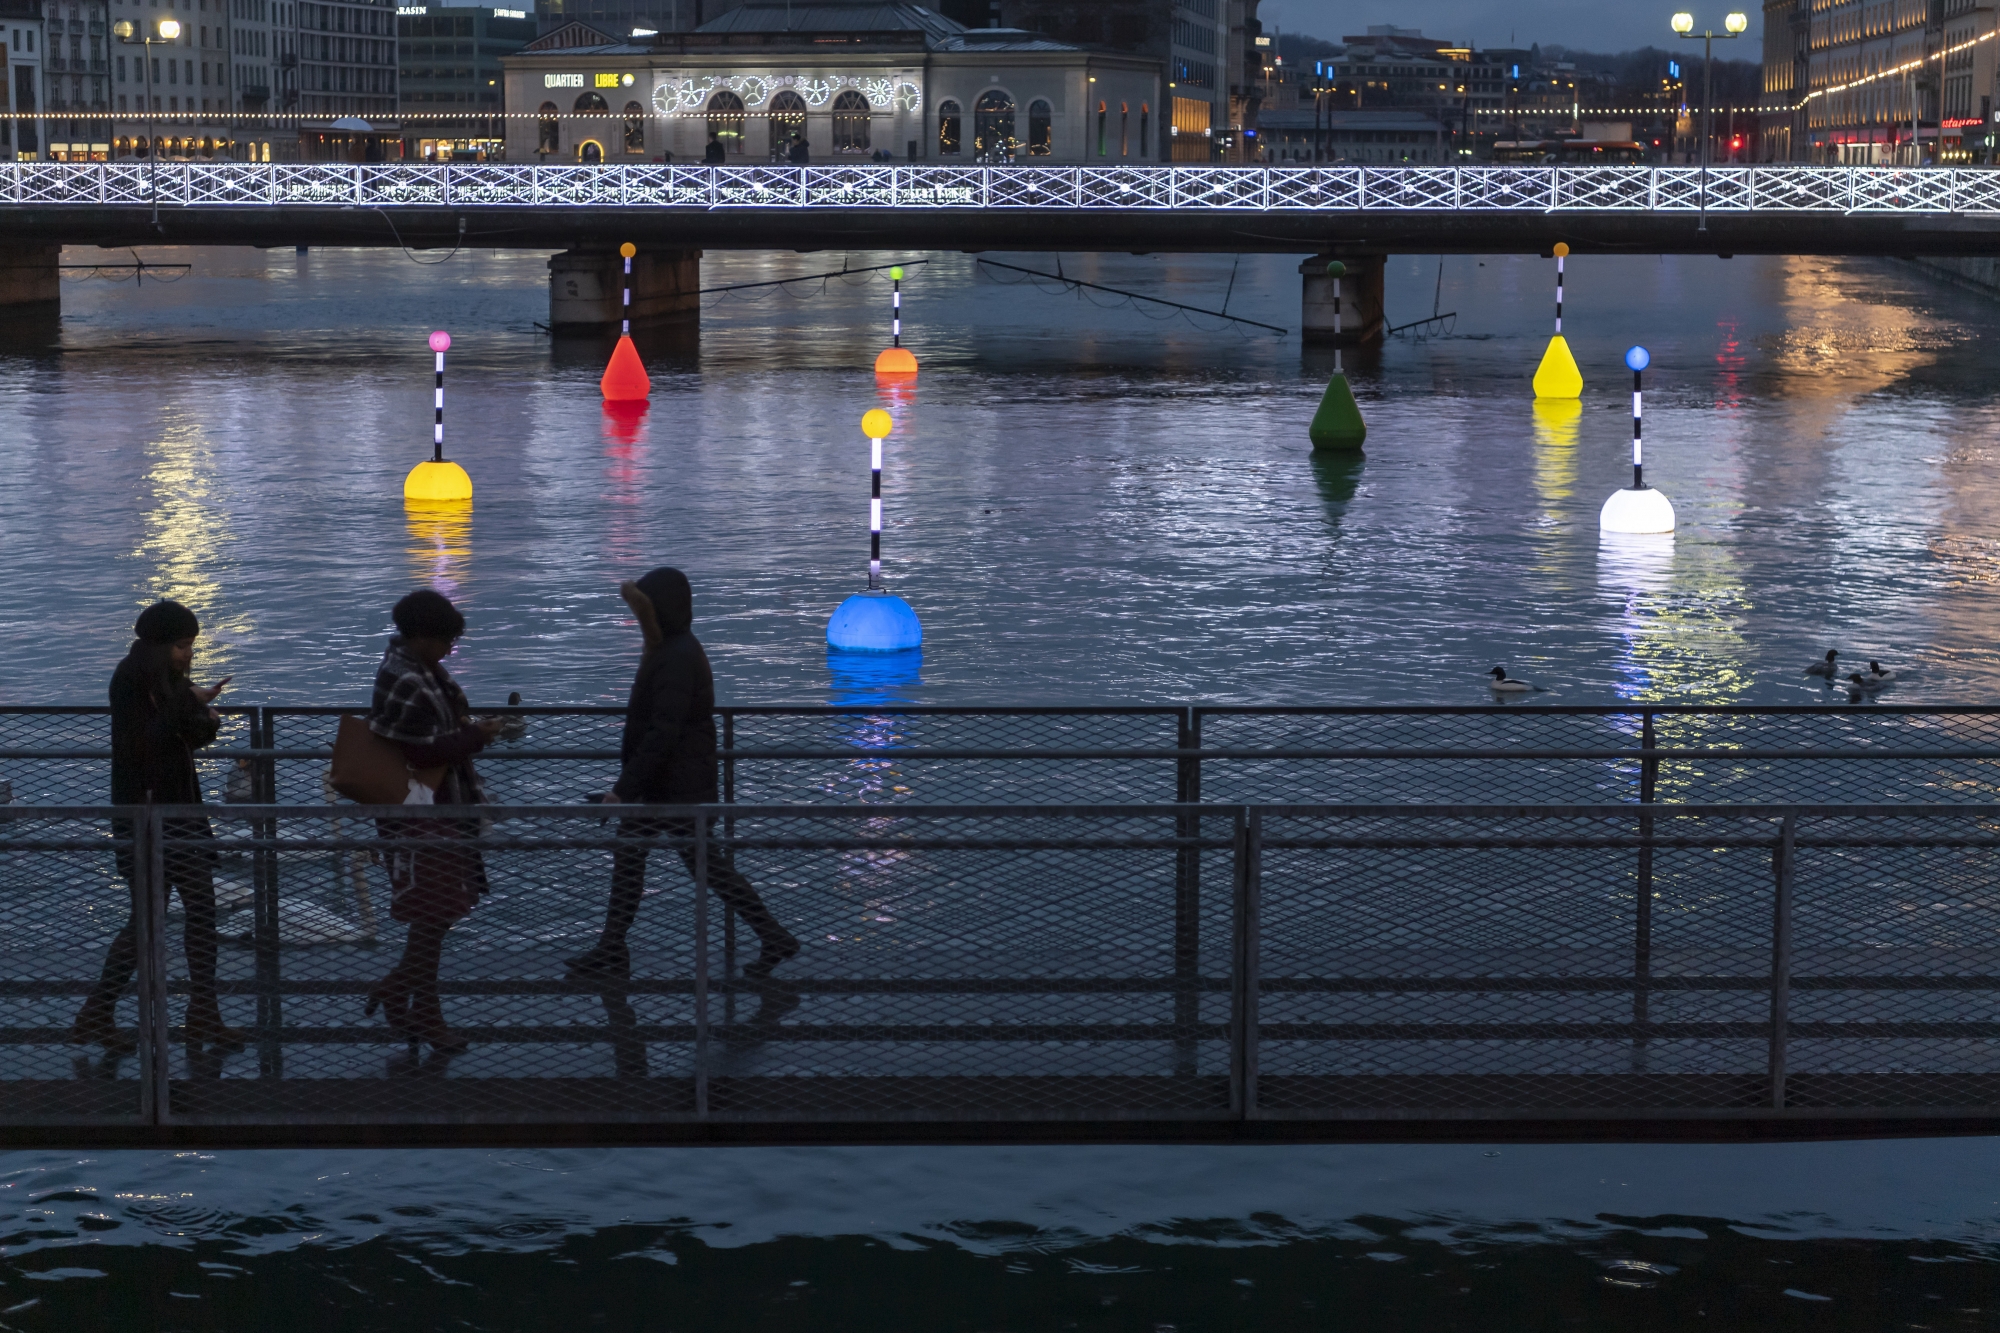 Le tourisme à Genève s'appuie sur plusieurs événements, comme le festival des lumières (photo d'illustration).